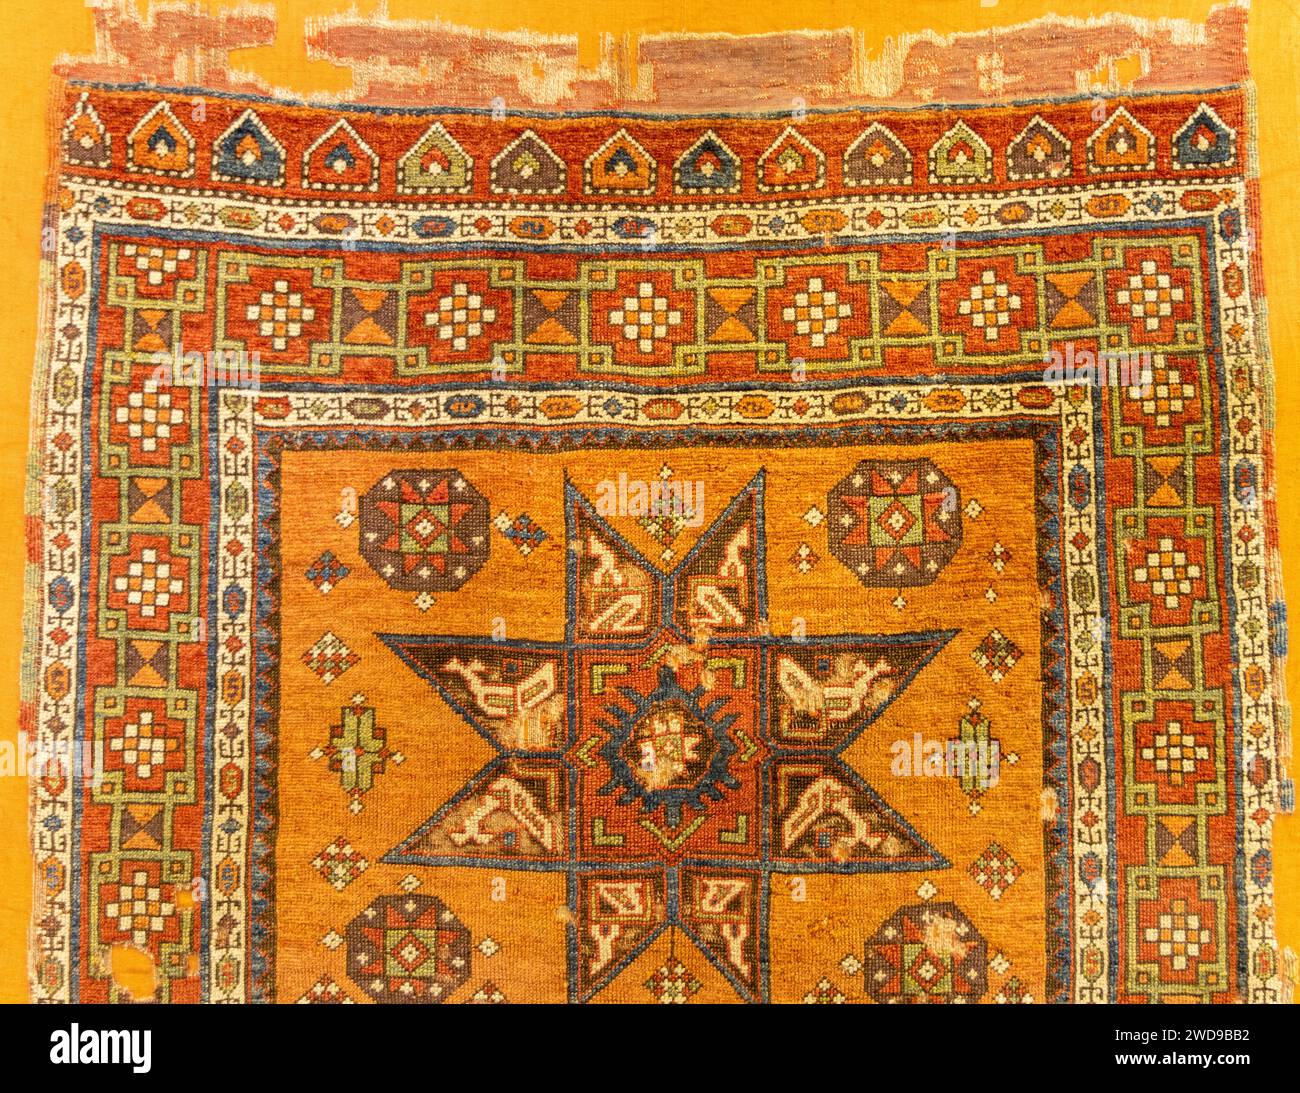 Beispiele für alte historische osmanische, türkische, nahöstliche und iranische Teppiche und Teppiche Stockfoto